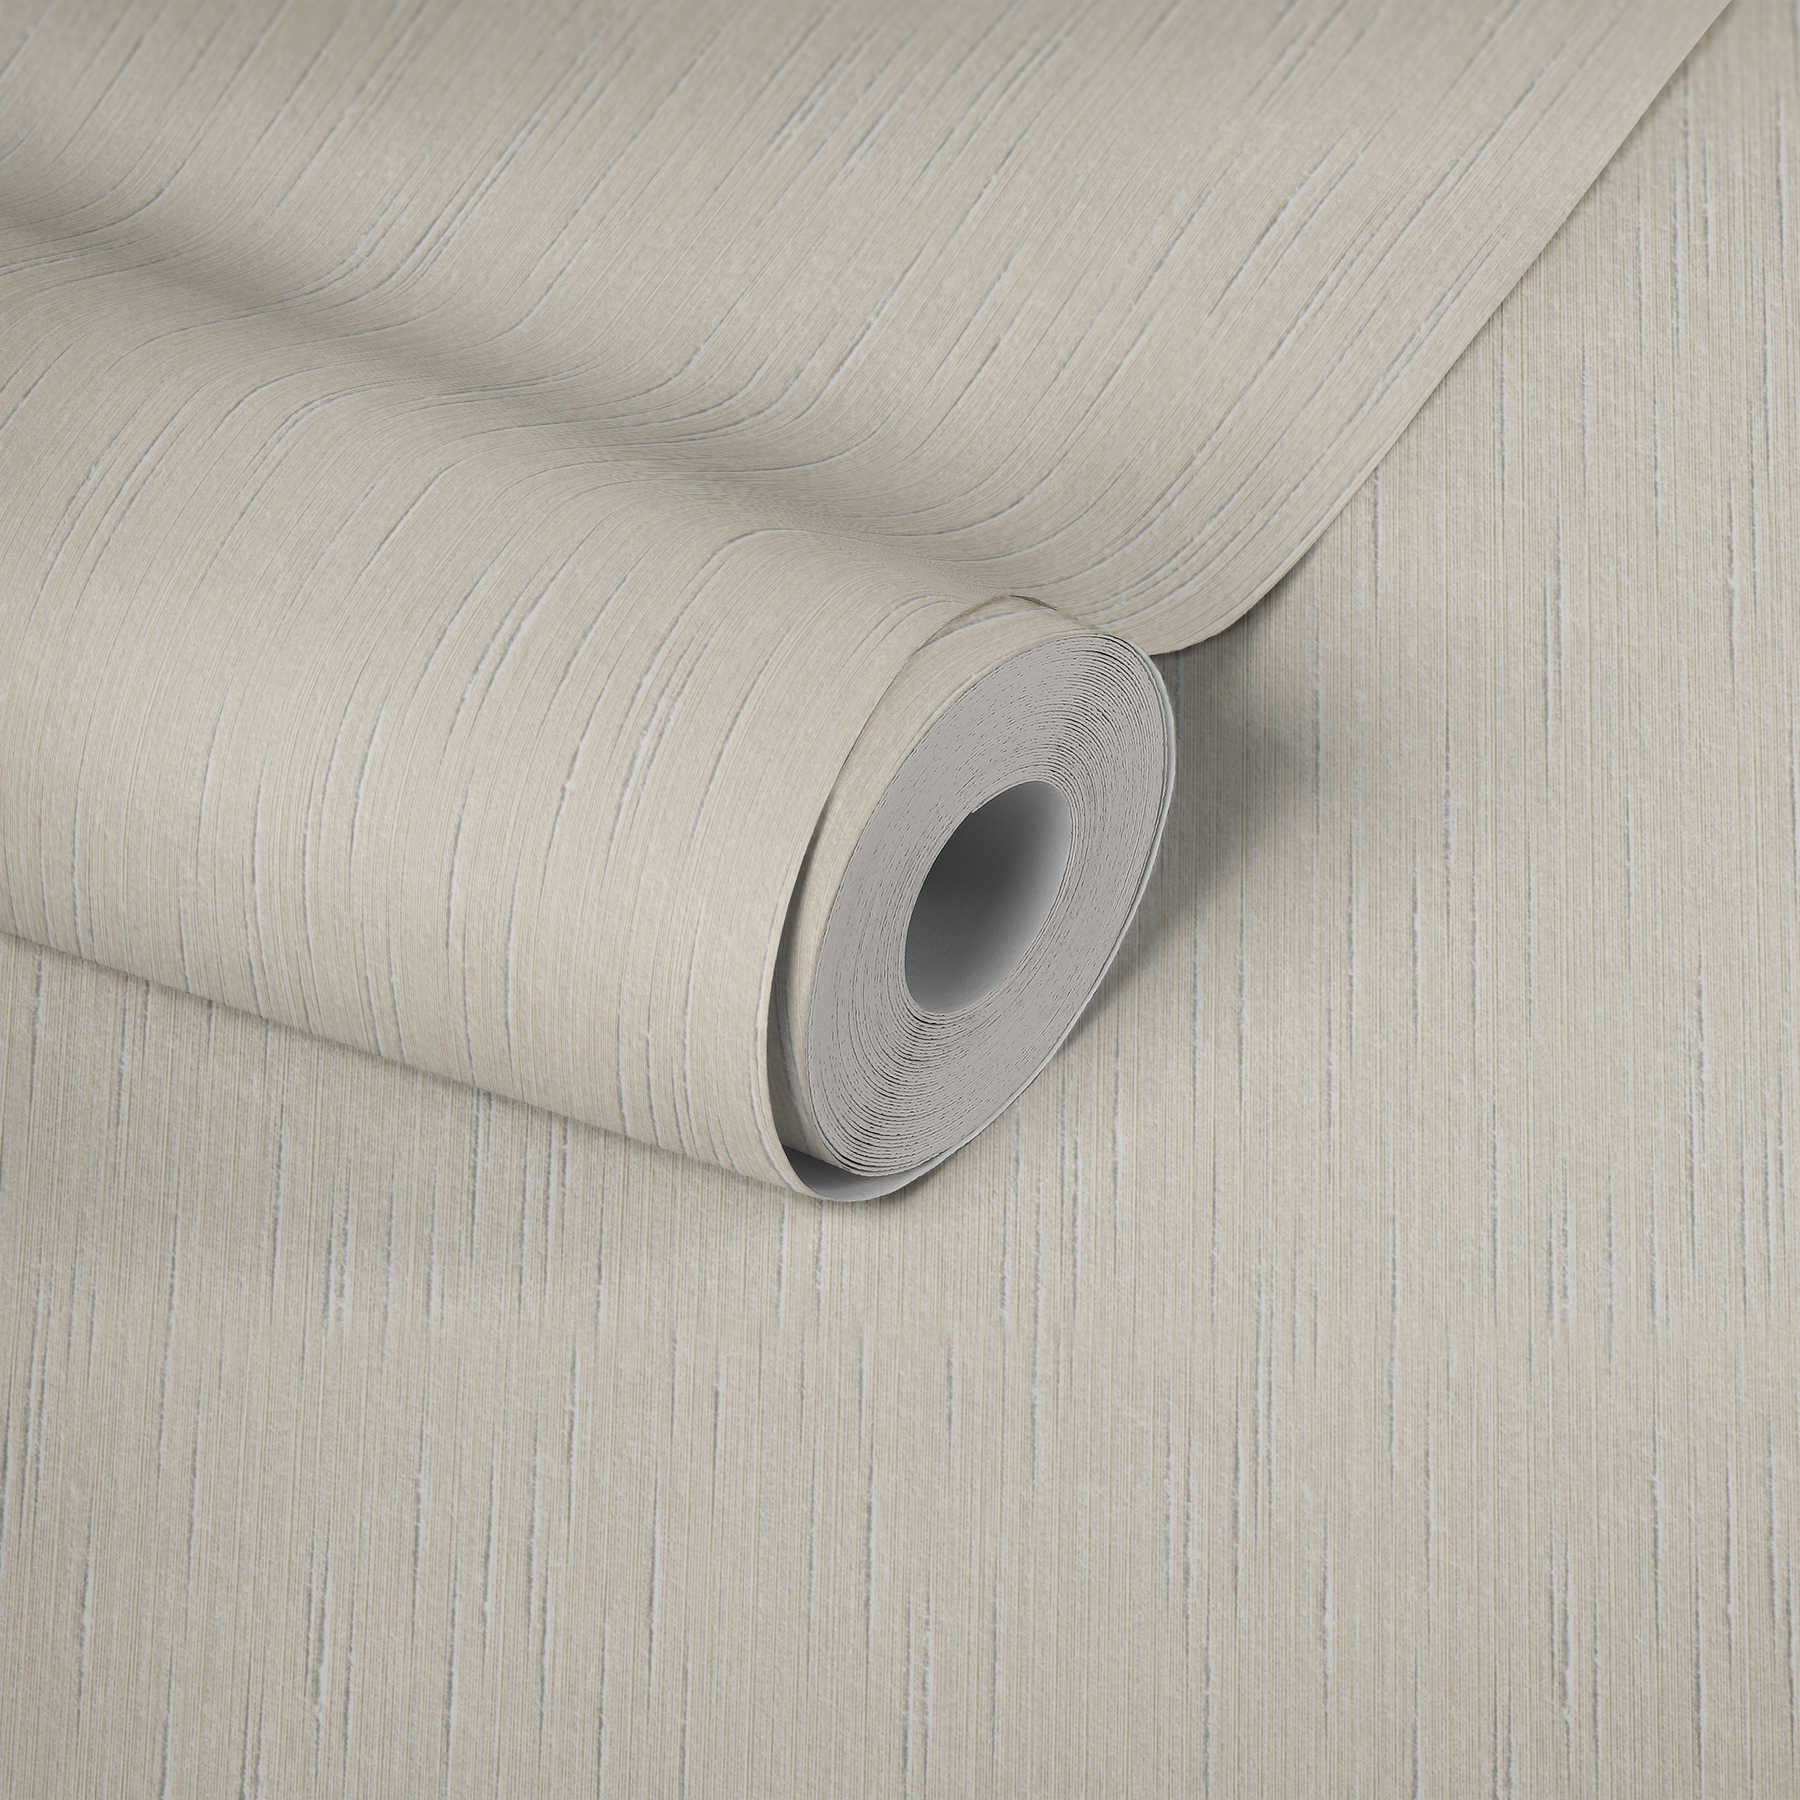             Papier peint intissé crème uni avec structure textile dans le style Dupion
        